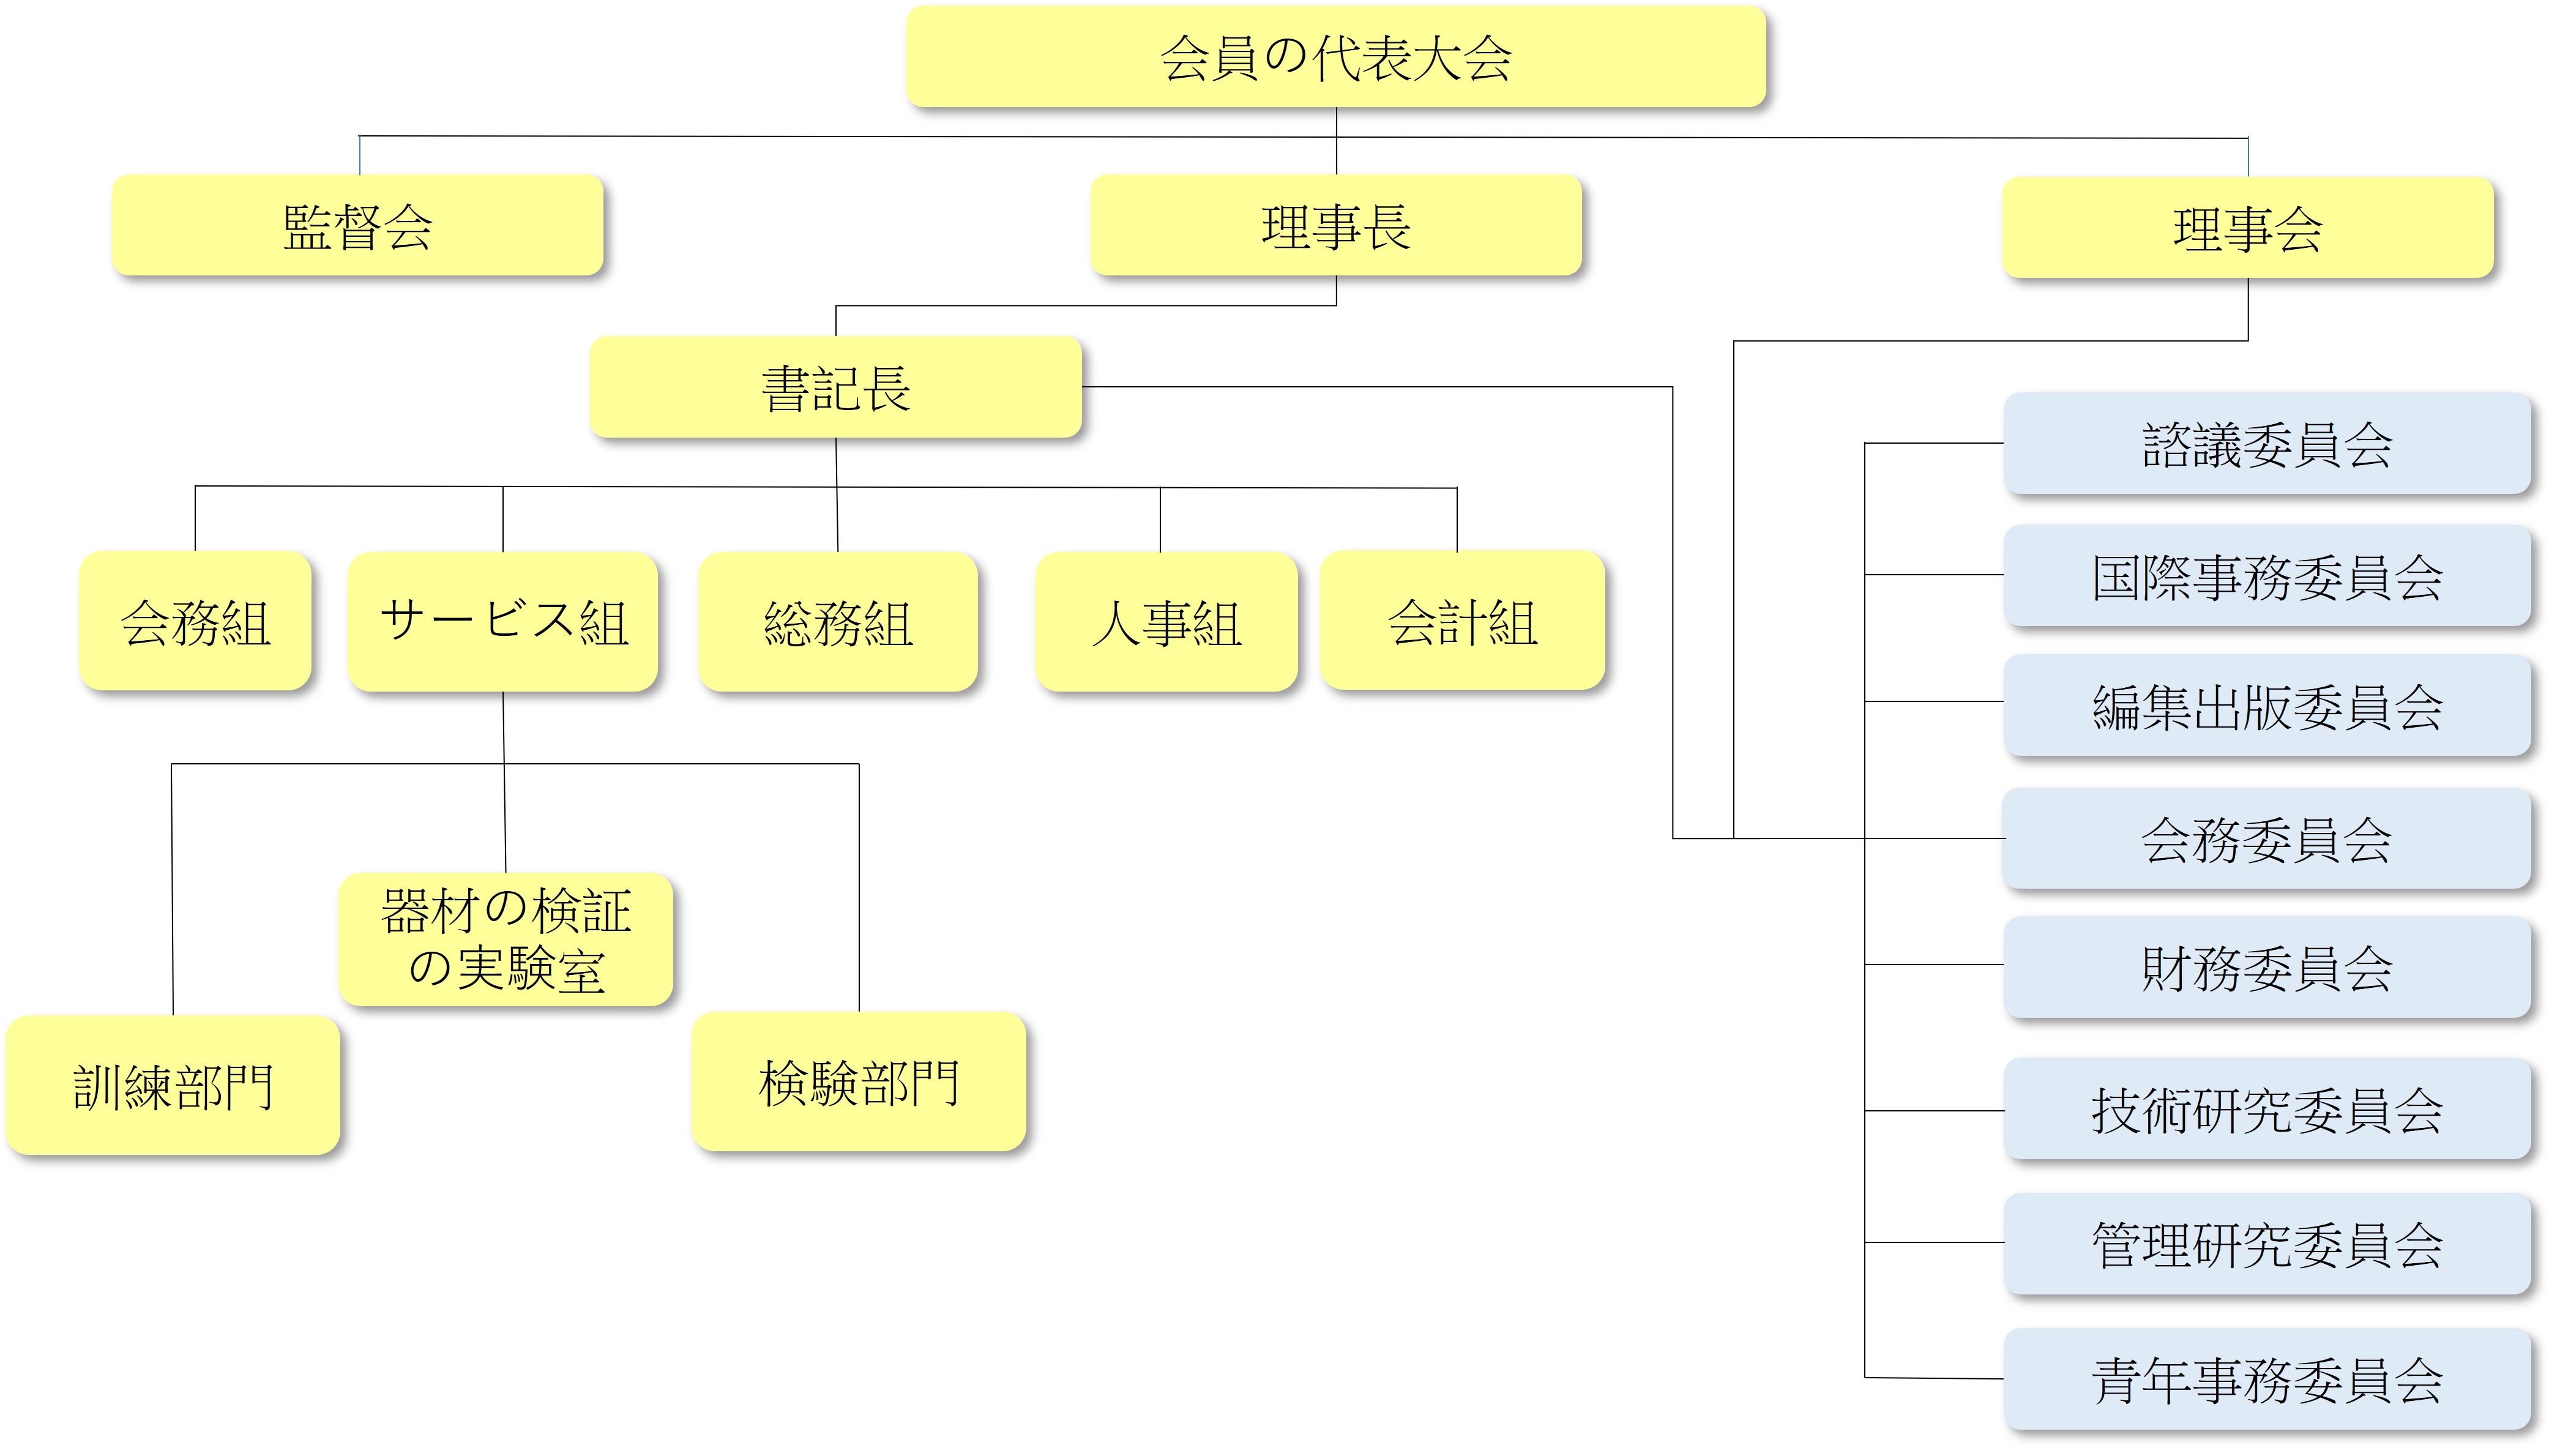 中華民国水道協会の組織図